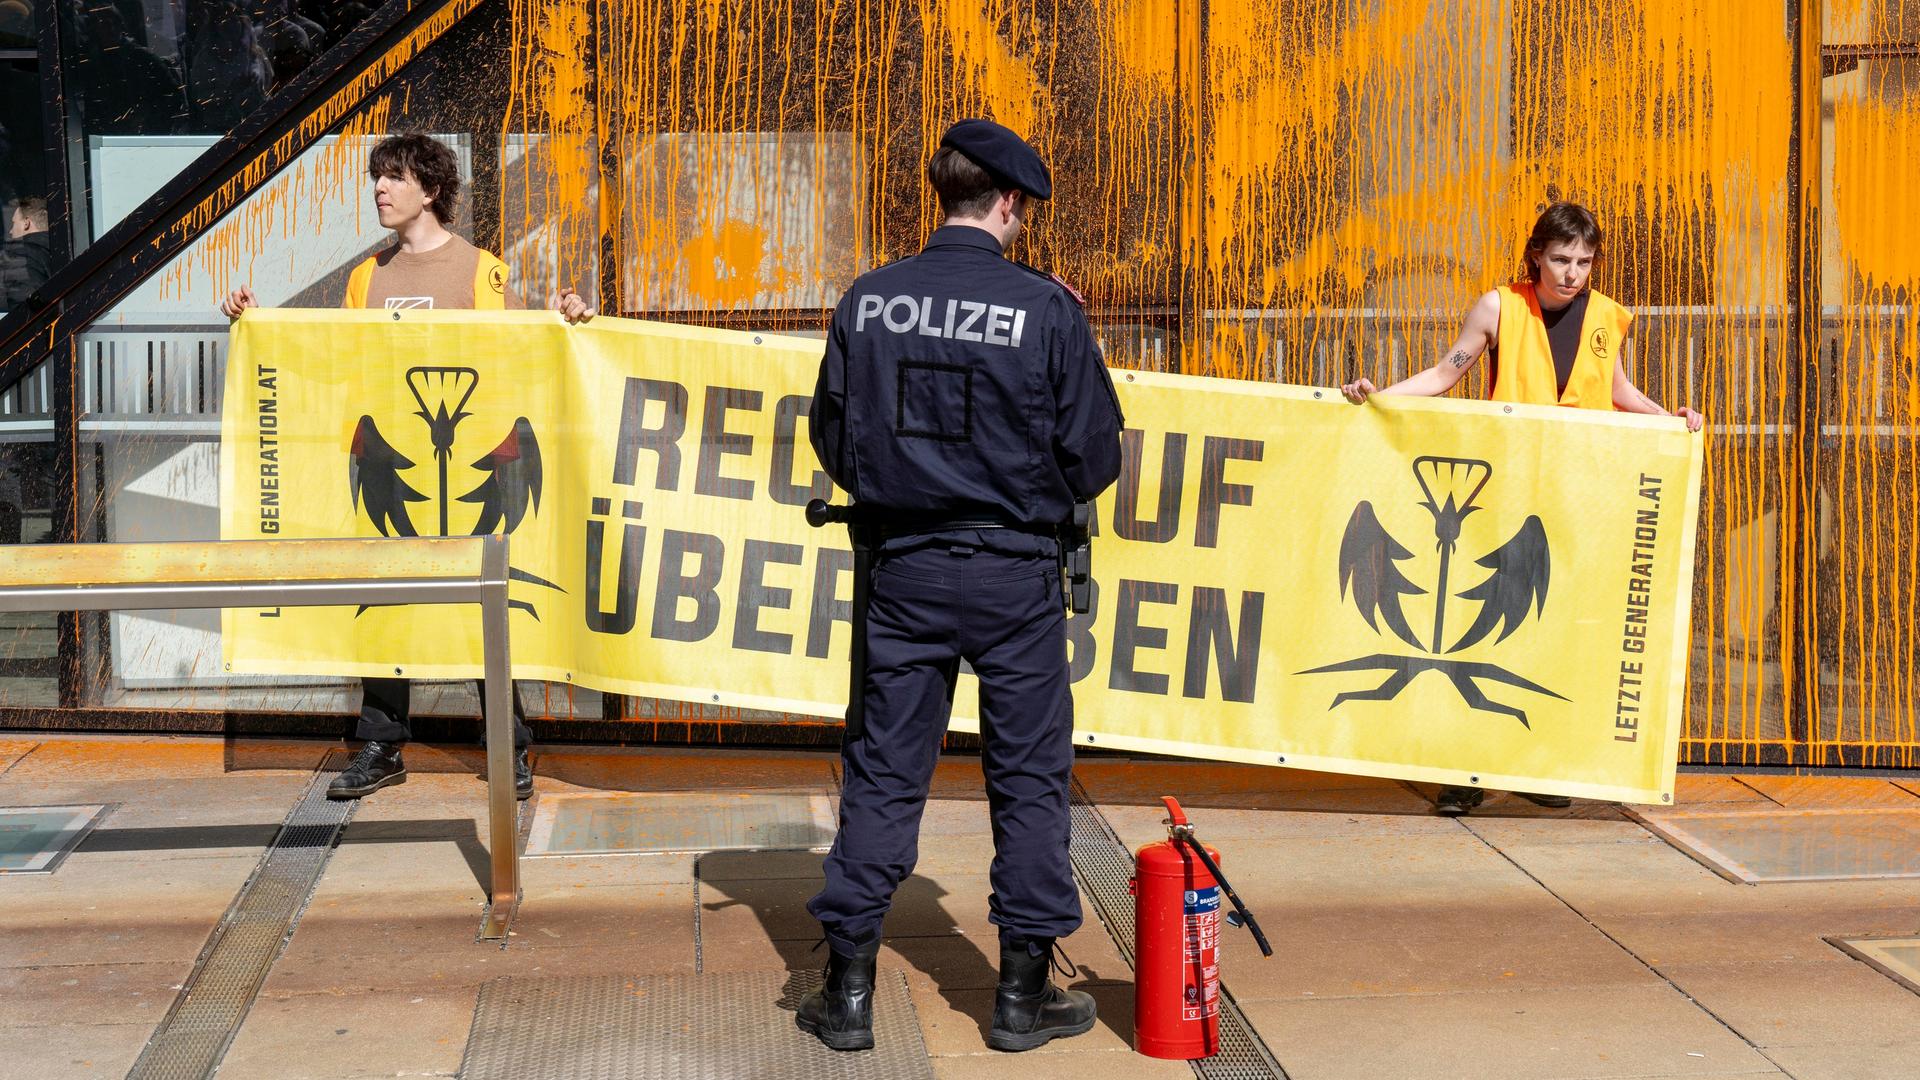 Klimaaktivisten der "Letzten Generation" protestieren in Wien. Sie halten ein Plakat mit der Aufschrift "Recht auf Überleben". Vor ihnen steht ein Polizist.